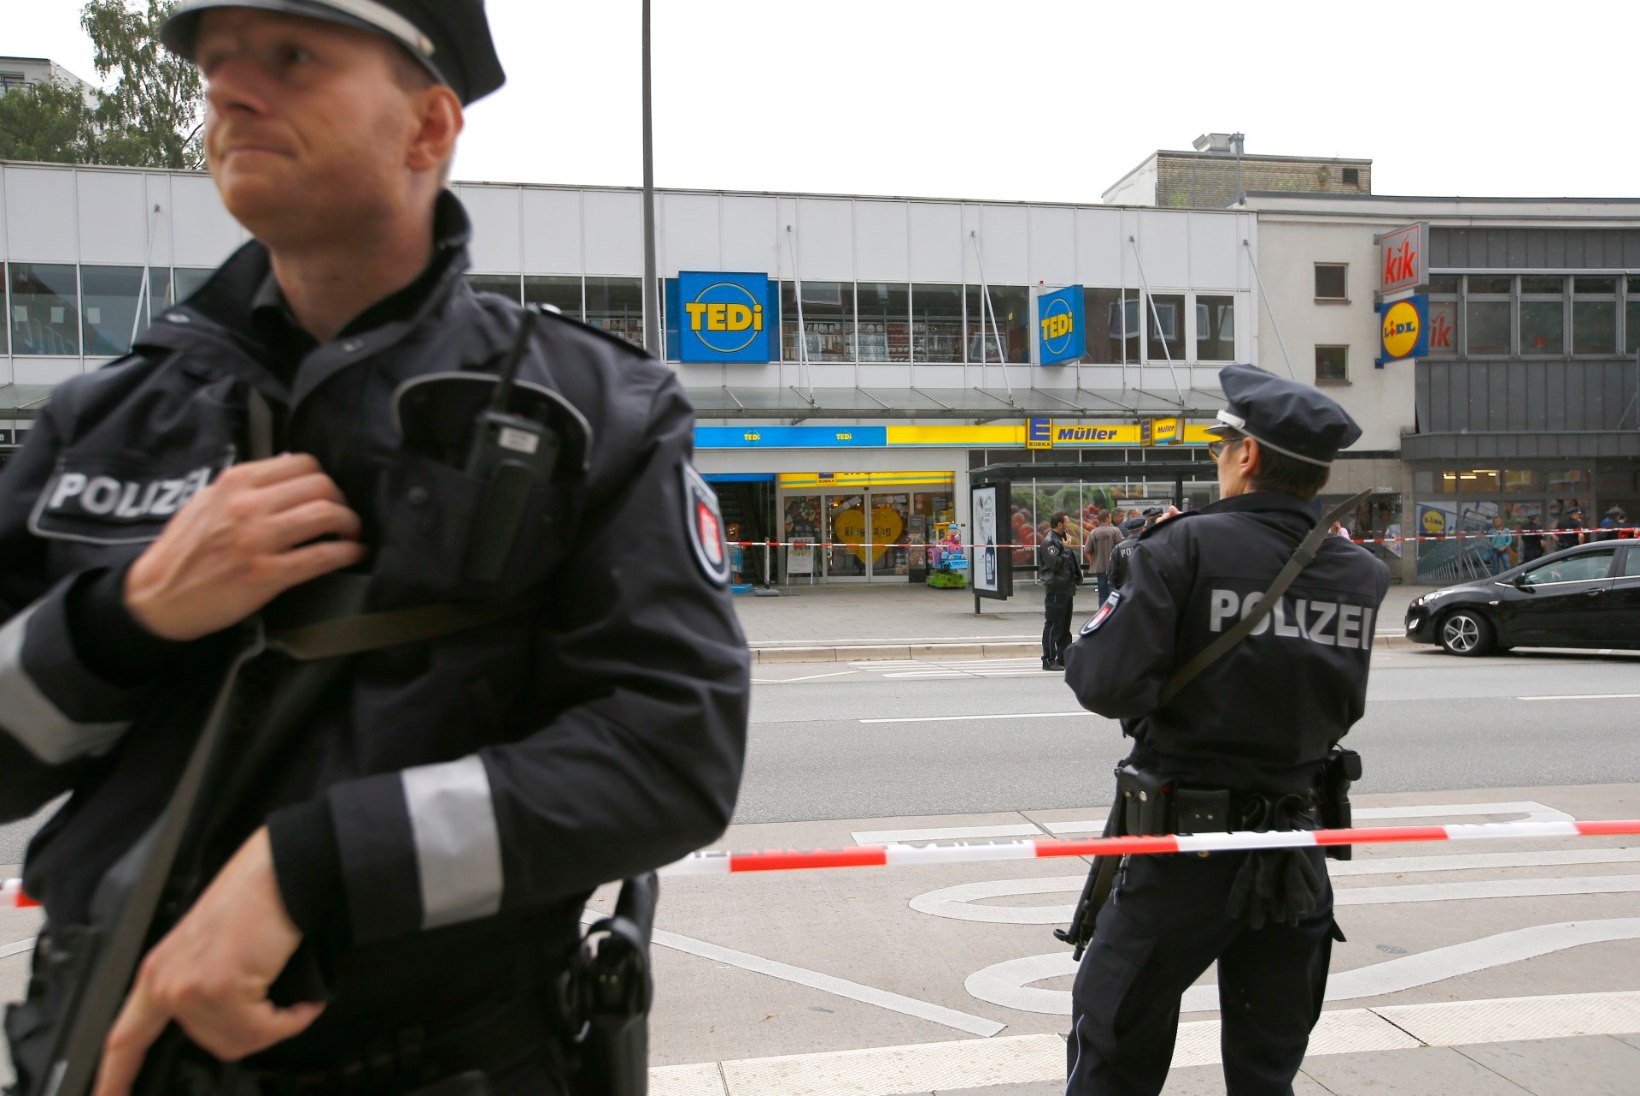 VIDEOD | Hamburgi tapja oli islamist, kuid võimude arvates ohutu